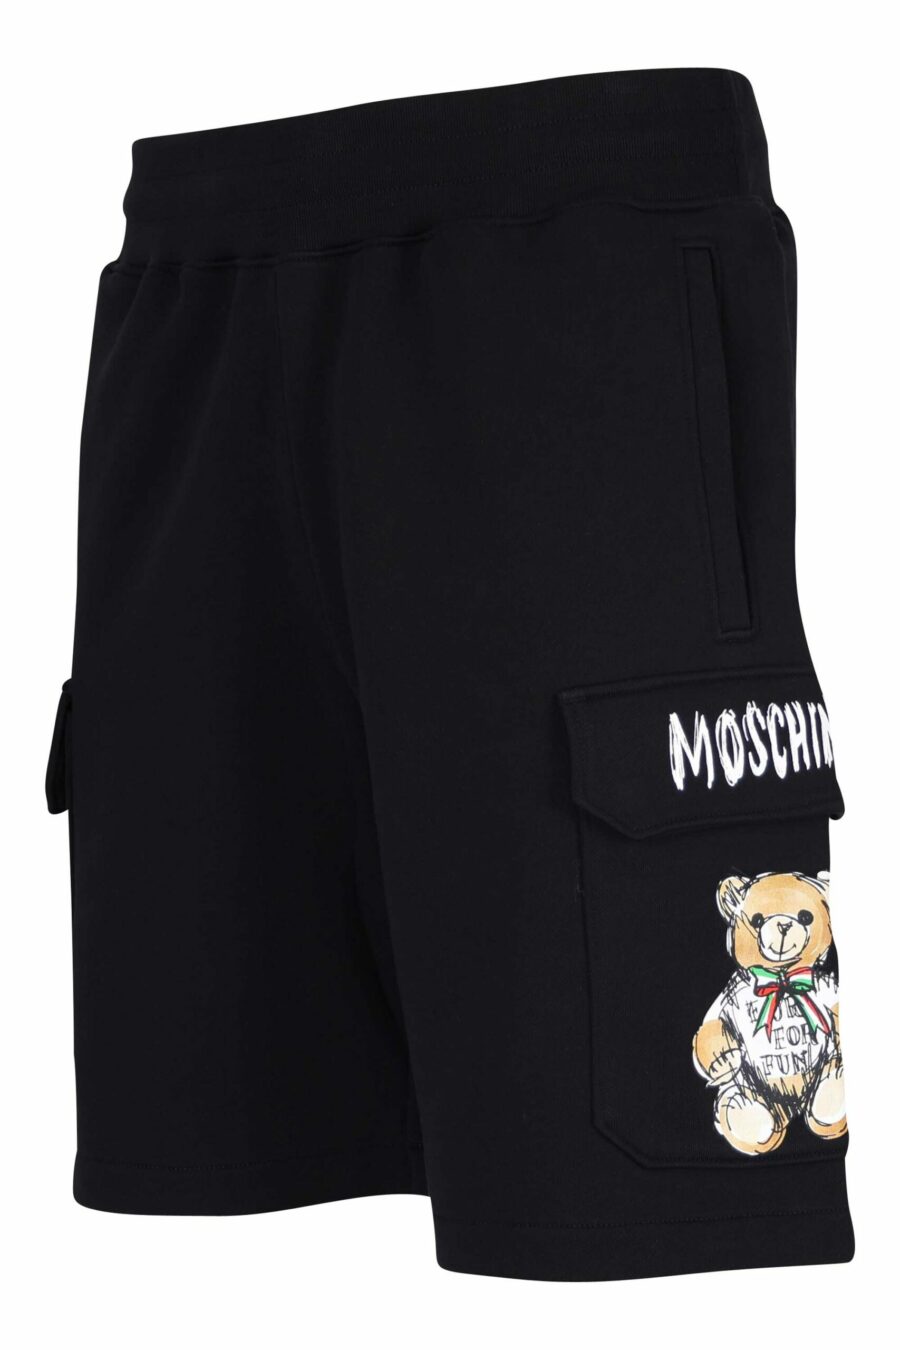 Pantalón de chándal negro de algodón orgánico estilo cargo y logo oso dibujo - 667113767390 1 scaled